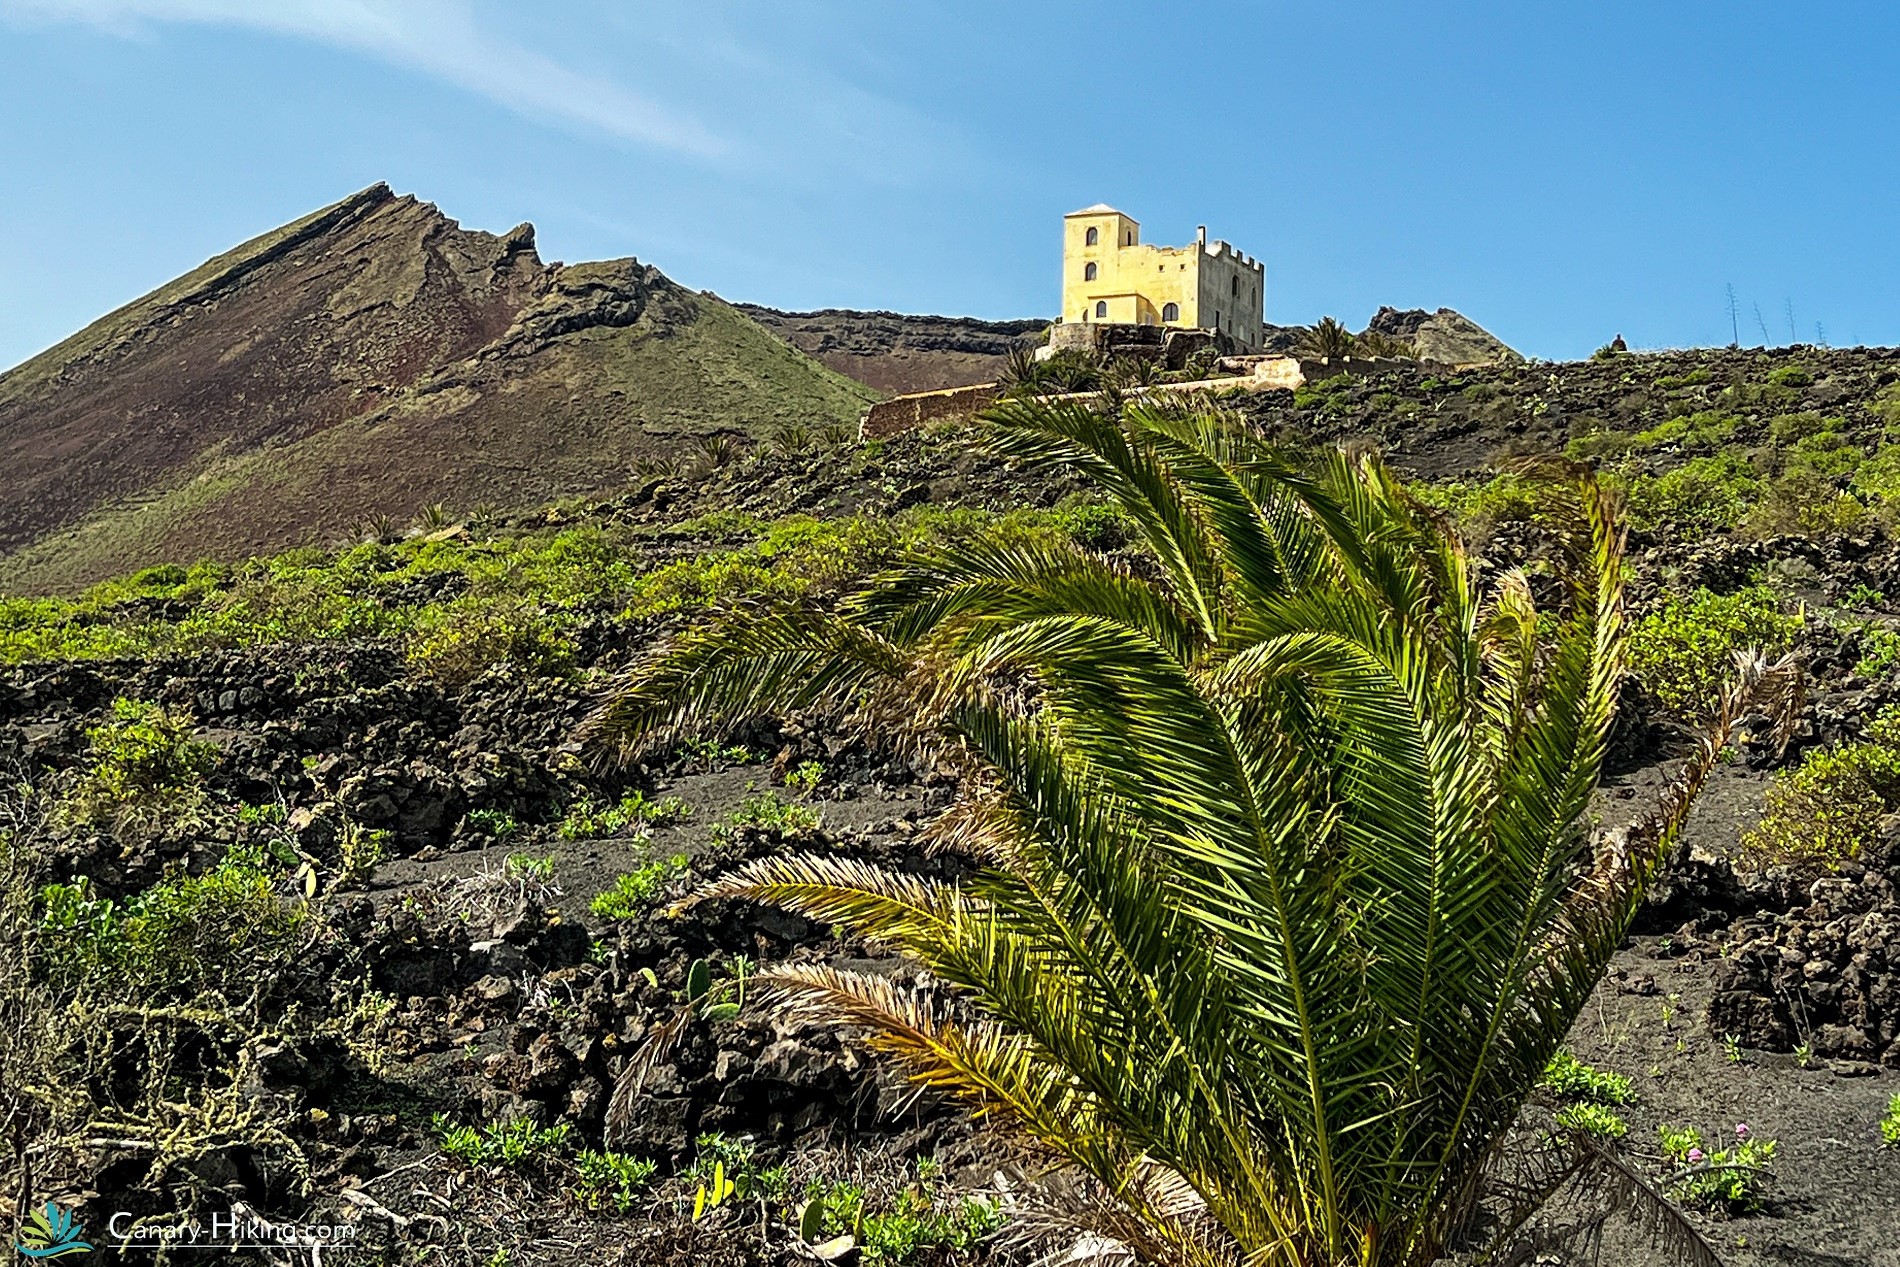 Dag 5 - Wandelvakantie Lanzarote over de GR131